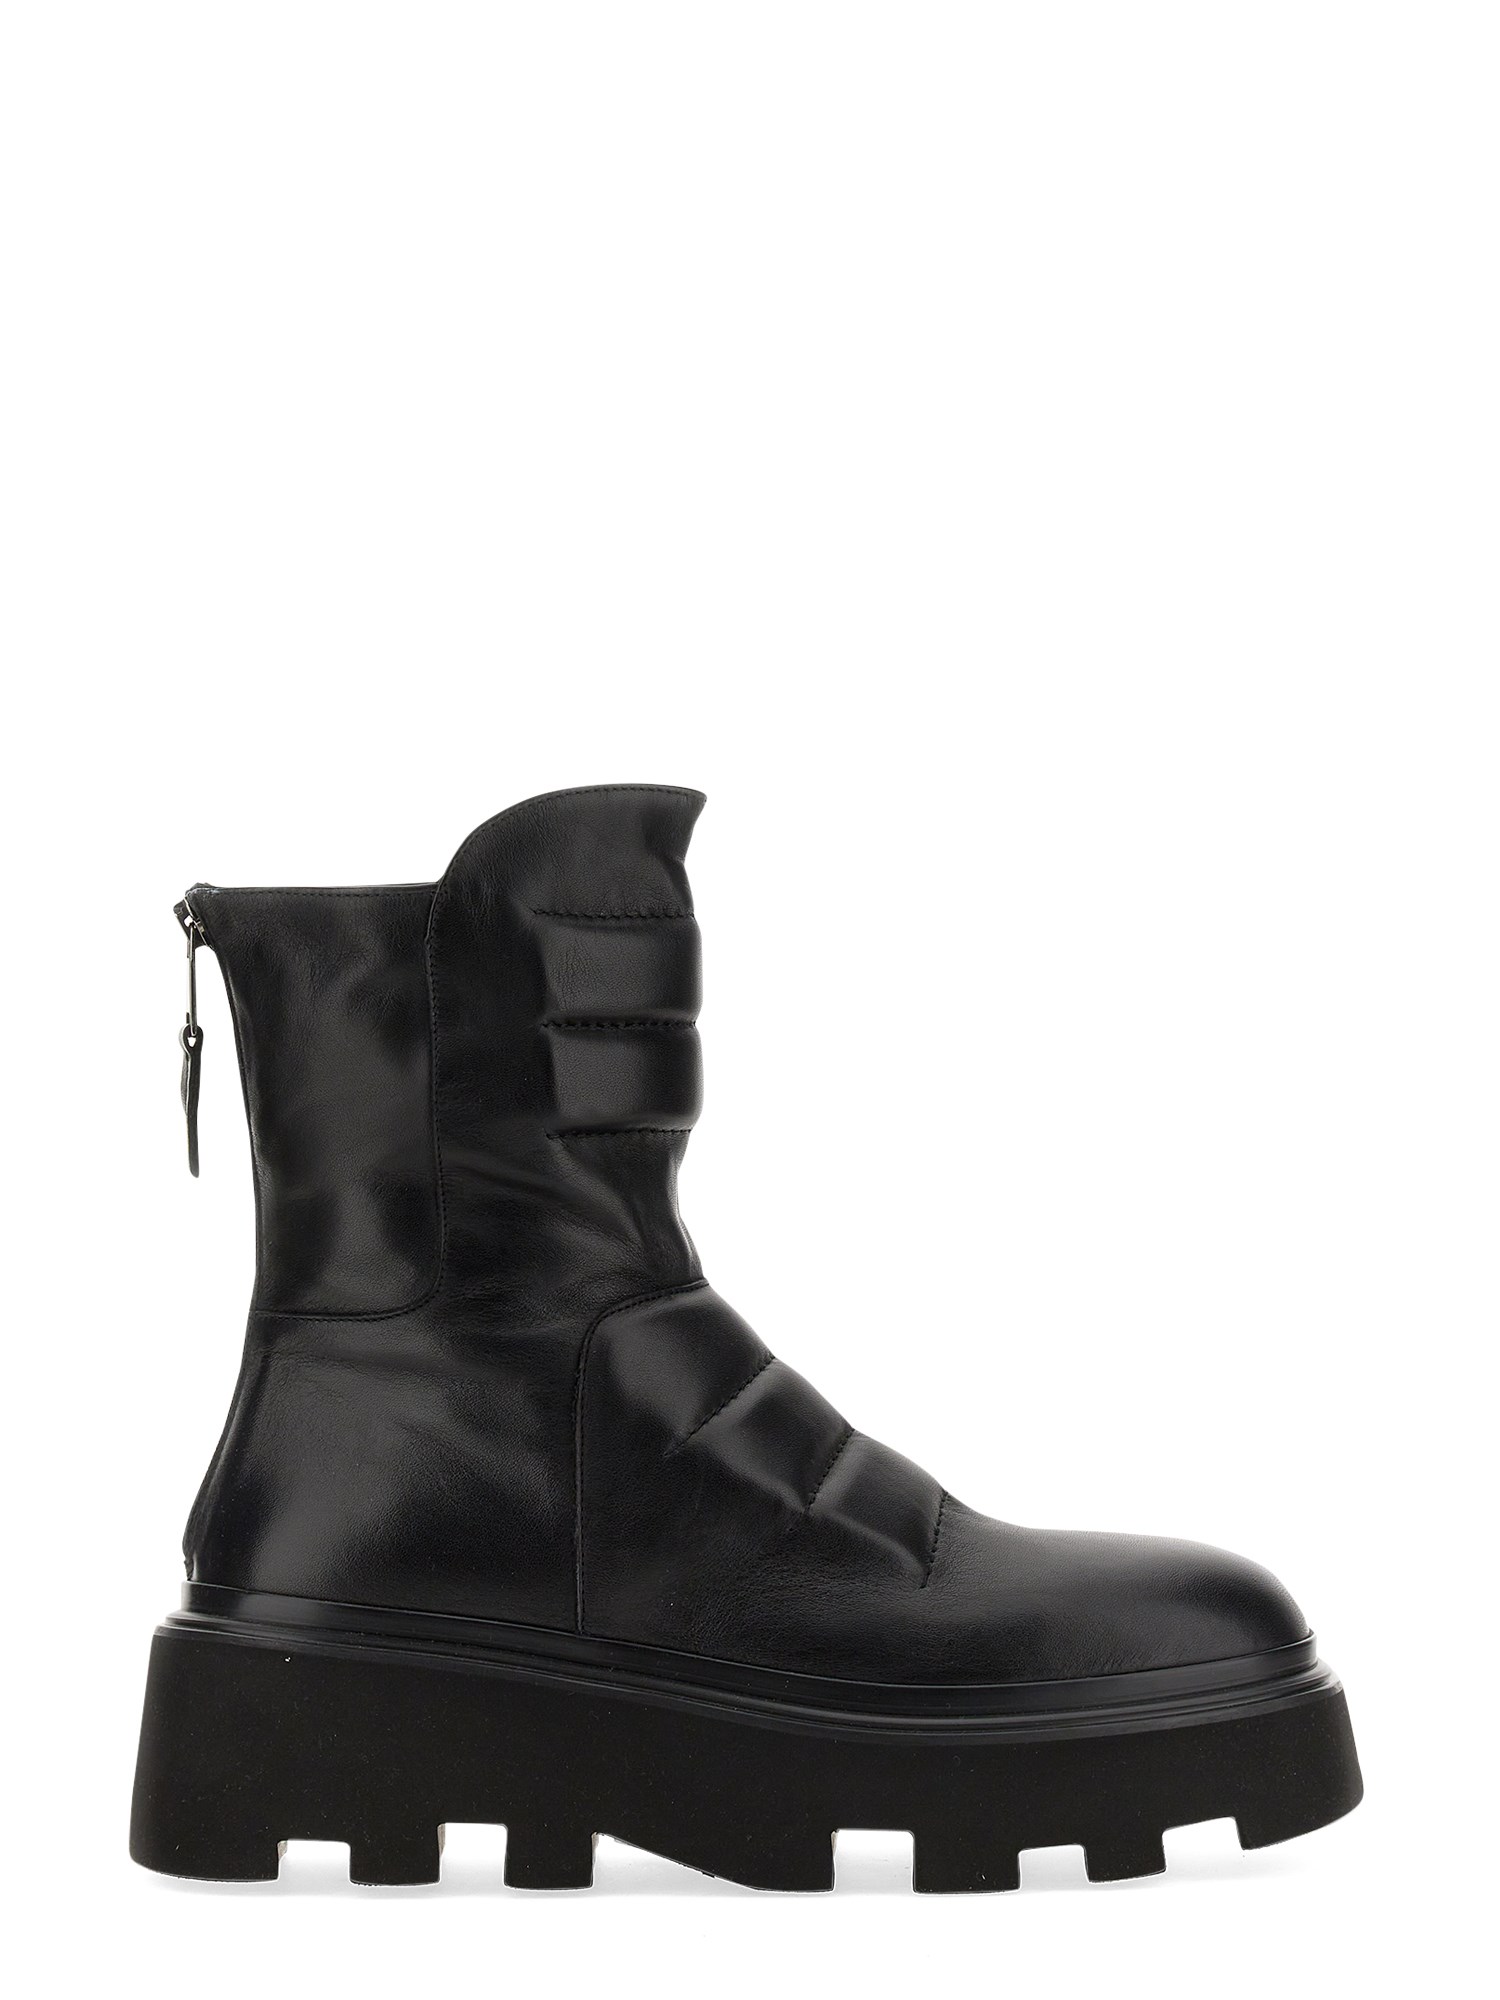 elena iachi leather boot